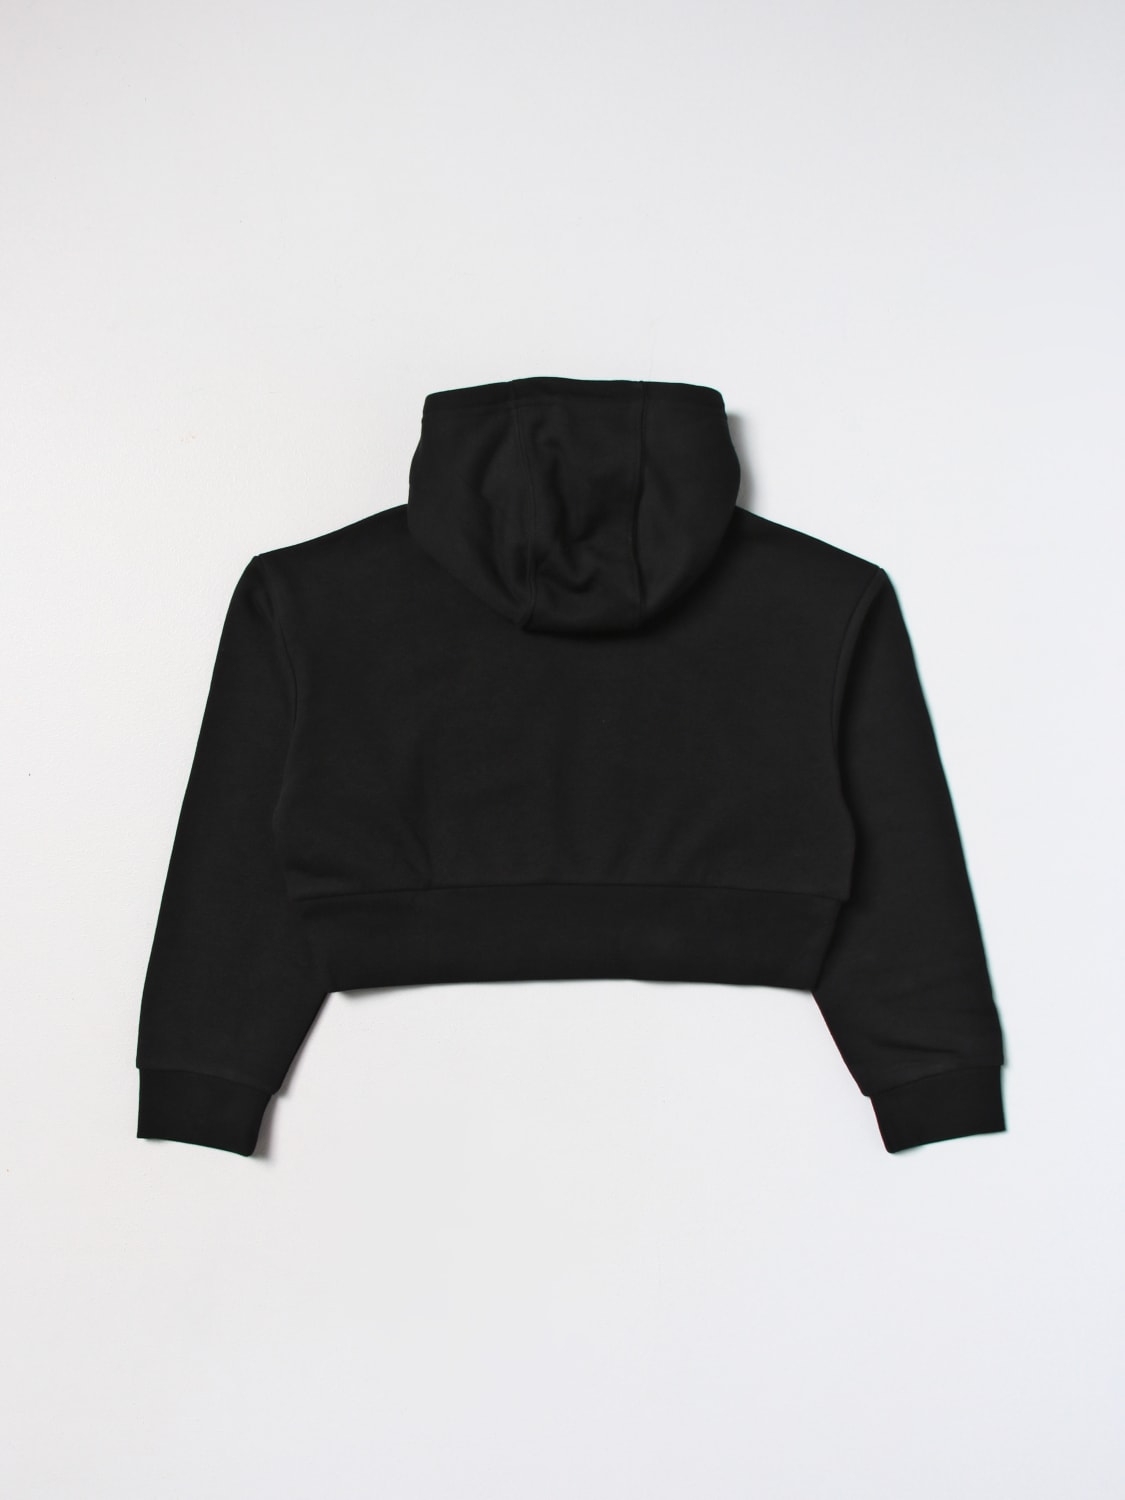 online sweatshirt - blend at Adidas Black in ORIGINALS: sweater IJ9719 Originals | ADIDAS cotton